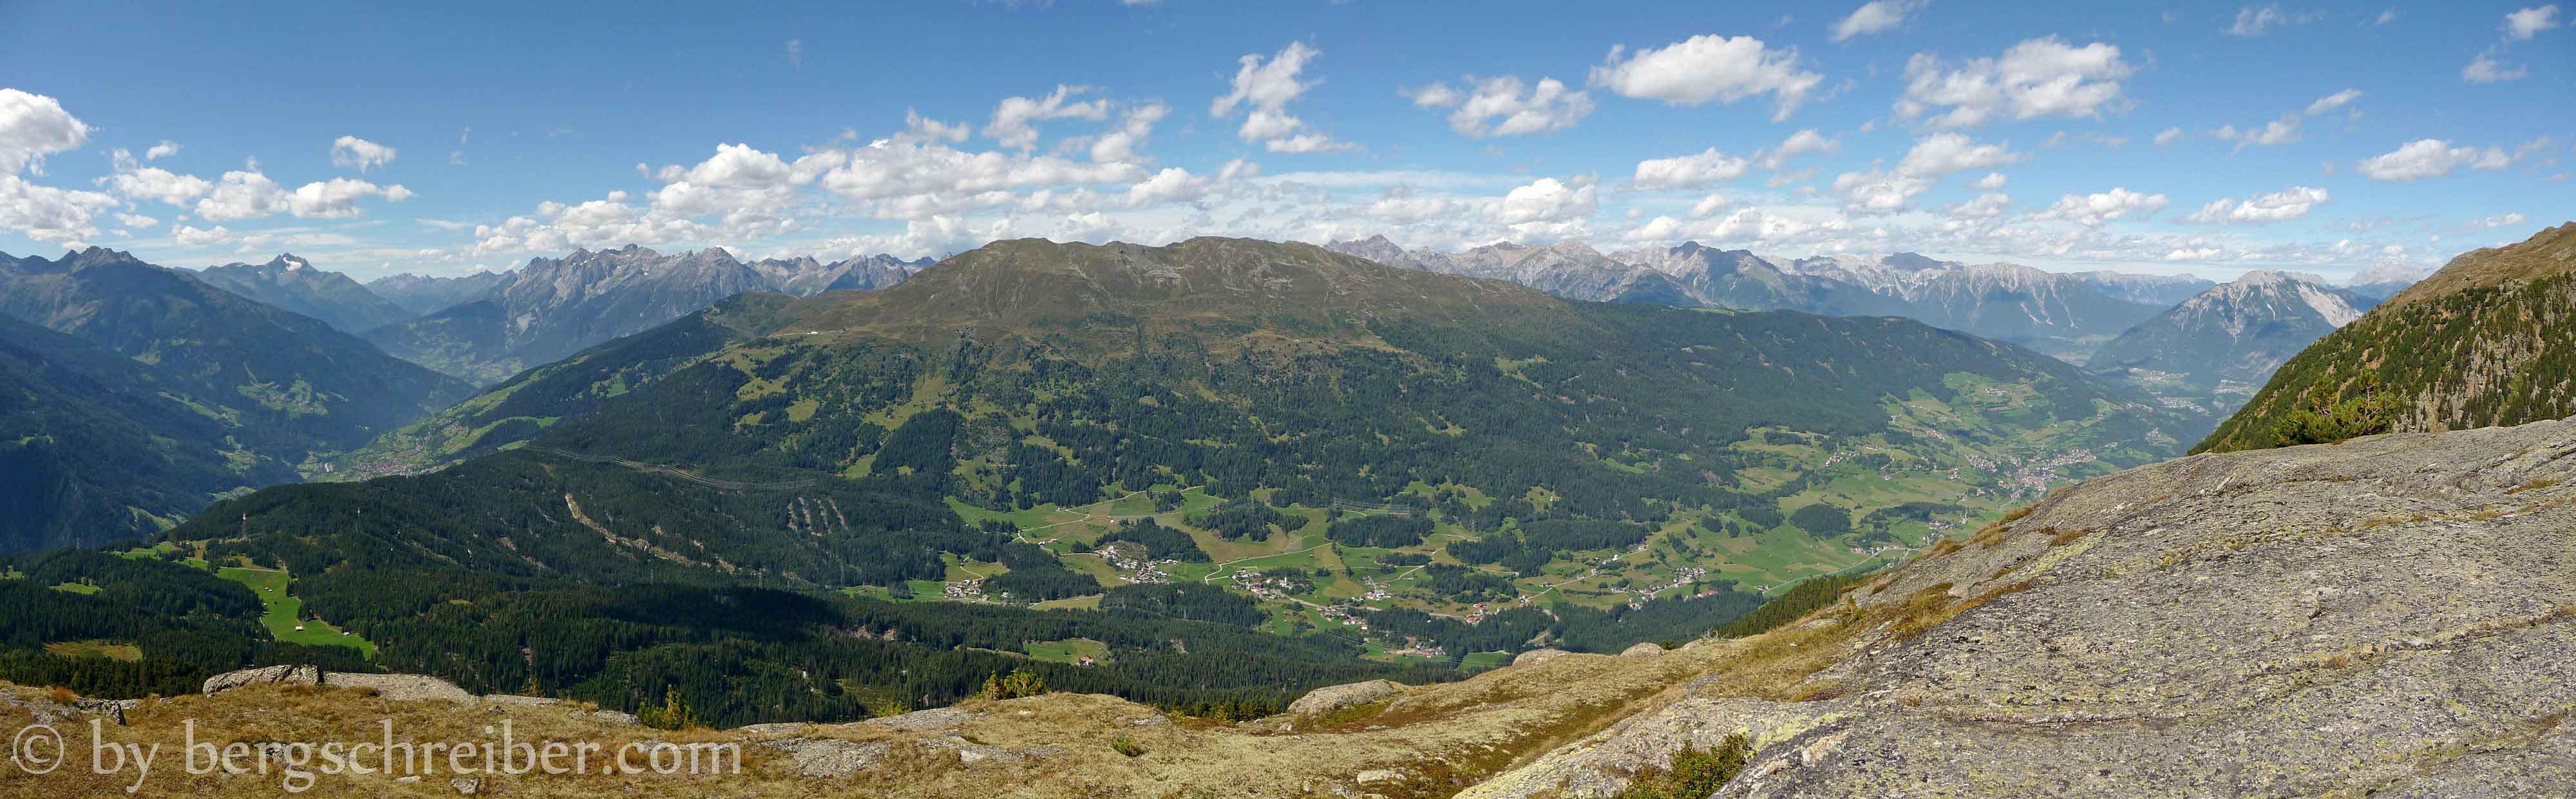 Venet und die Lechtaler Alpen